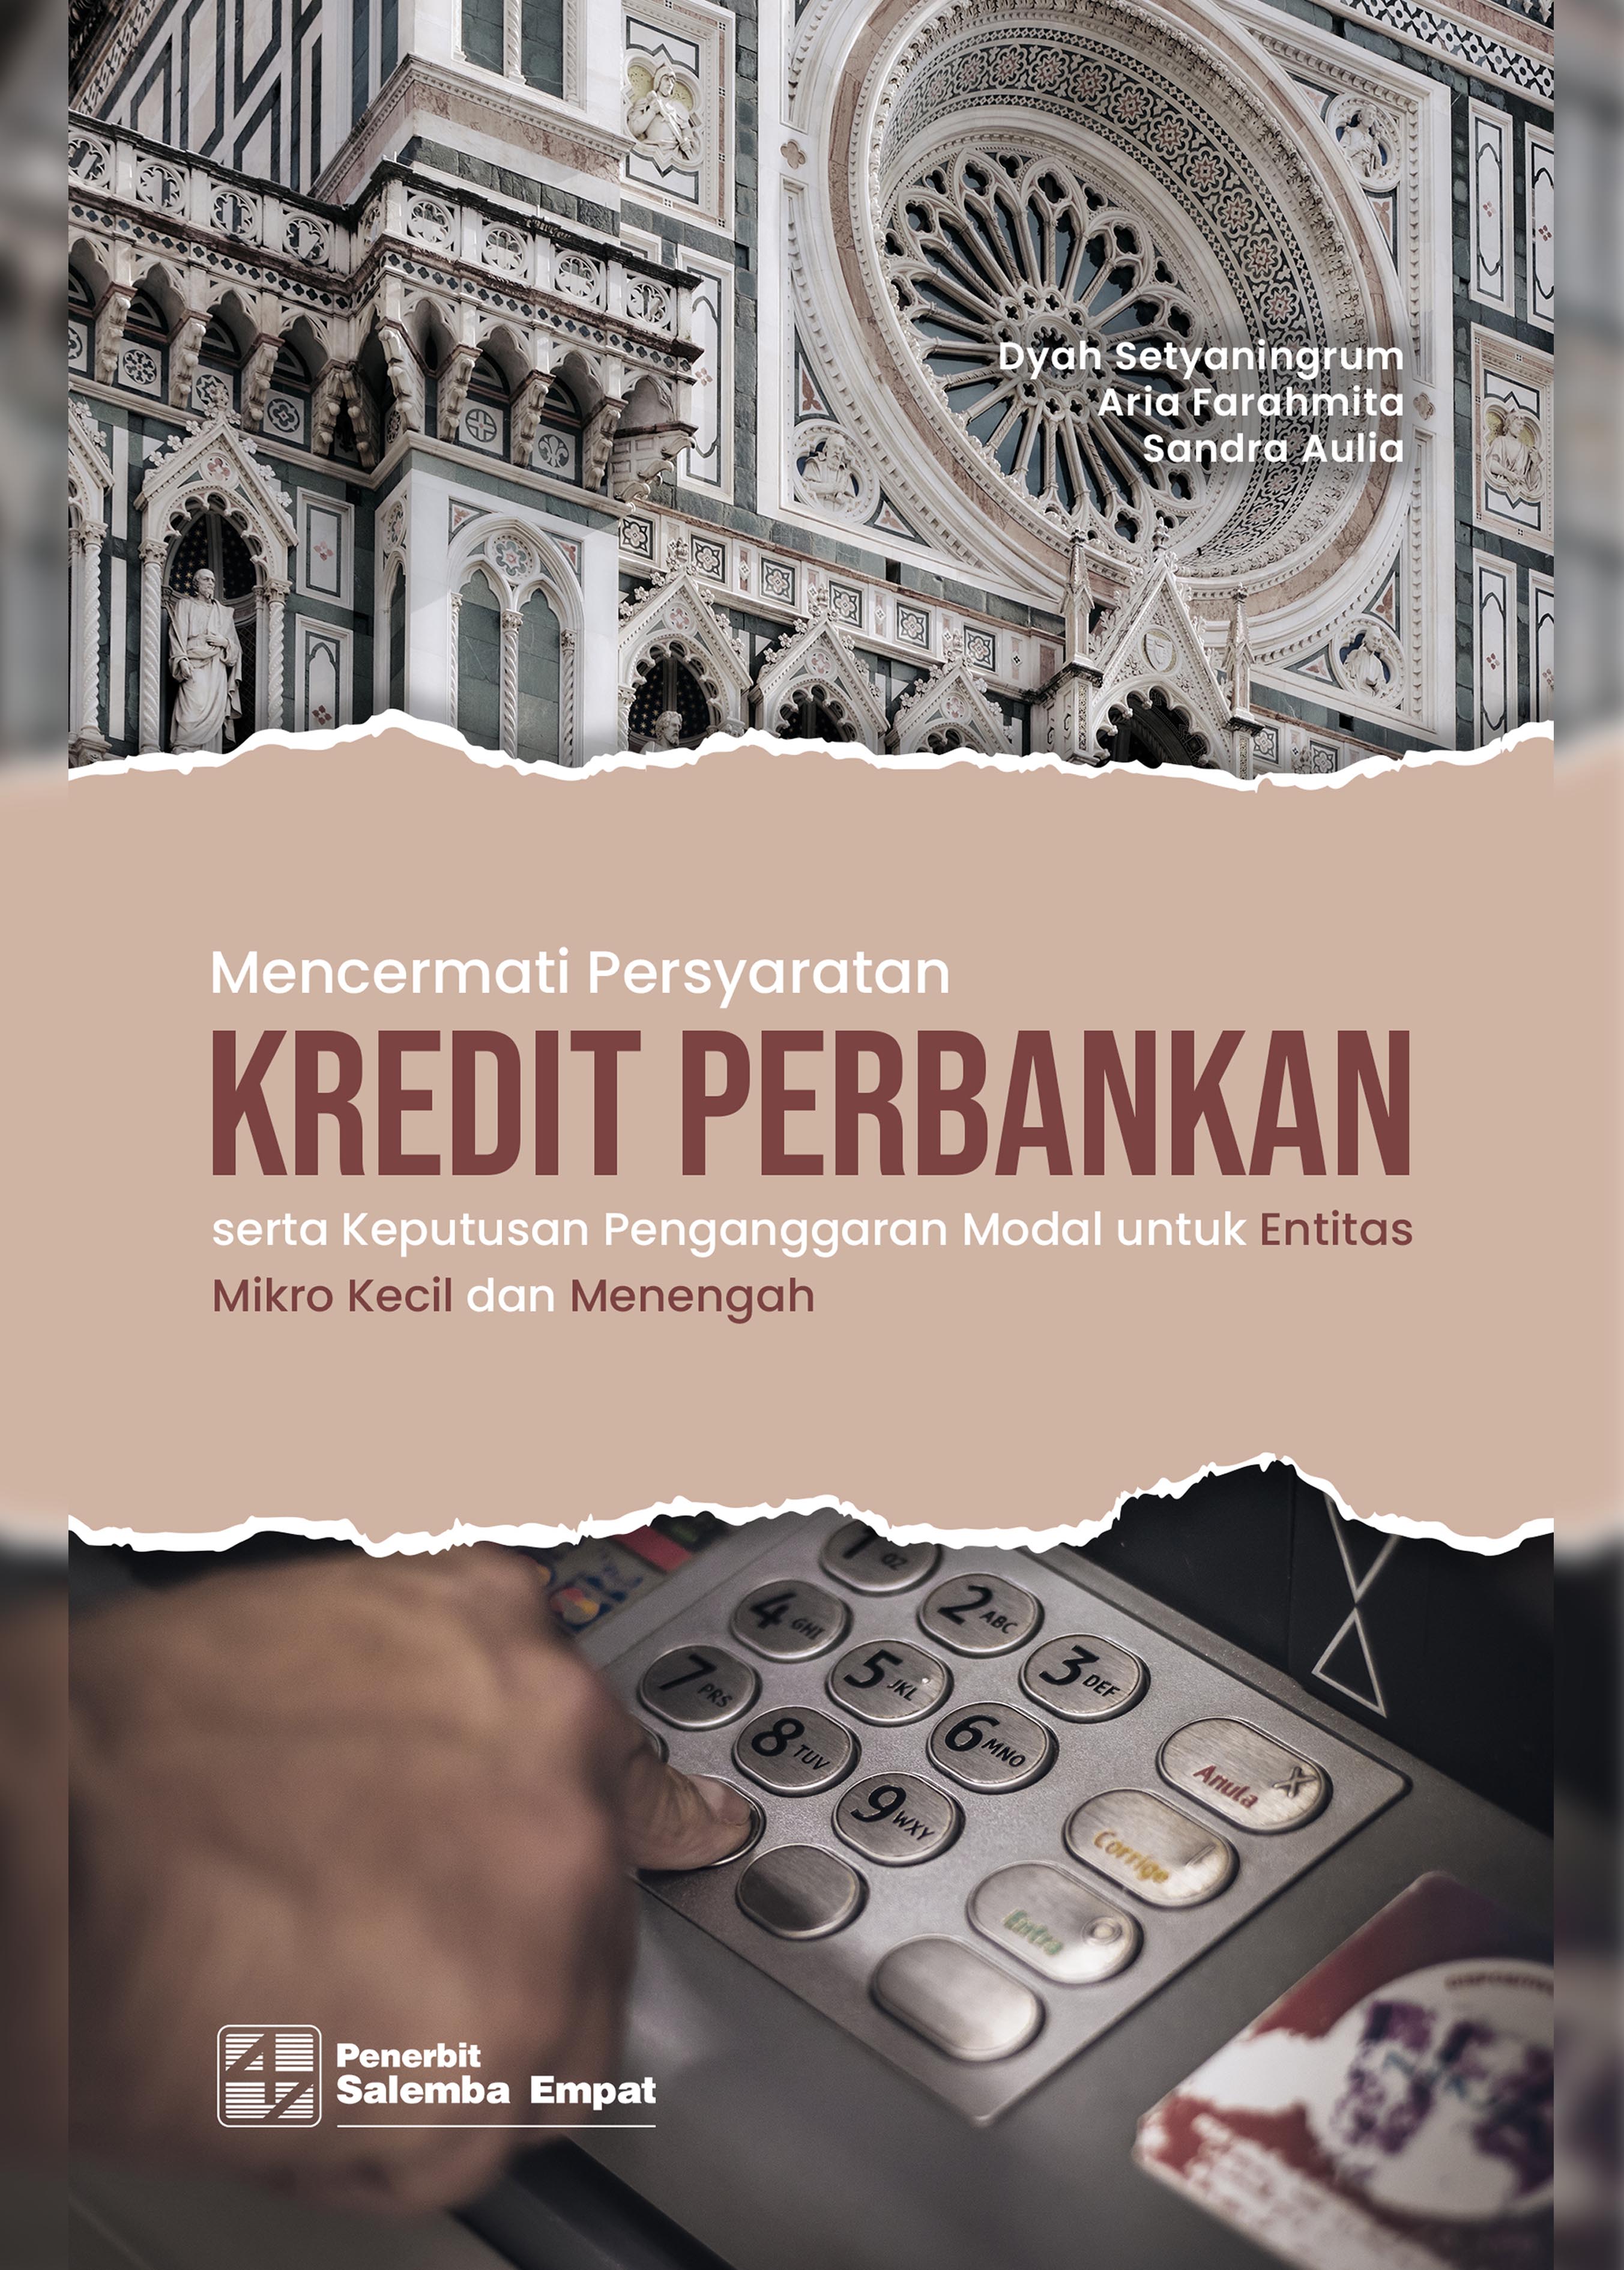 eBook Mencermati Persyaratan Kredit Perbankan dan Keputusan Penganggaran Modal untuk UMKM (Dyah Setyaningrum, Aria Farah Mita, Sandra Aulia)